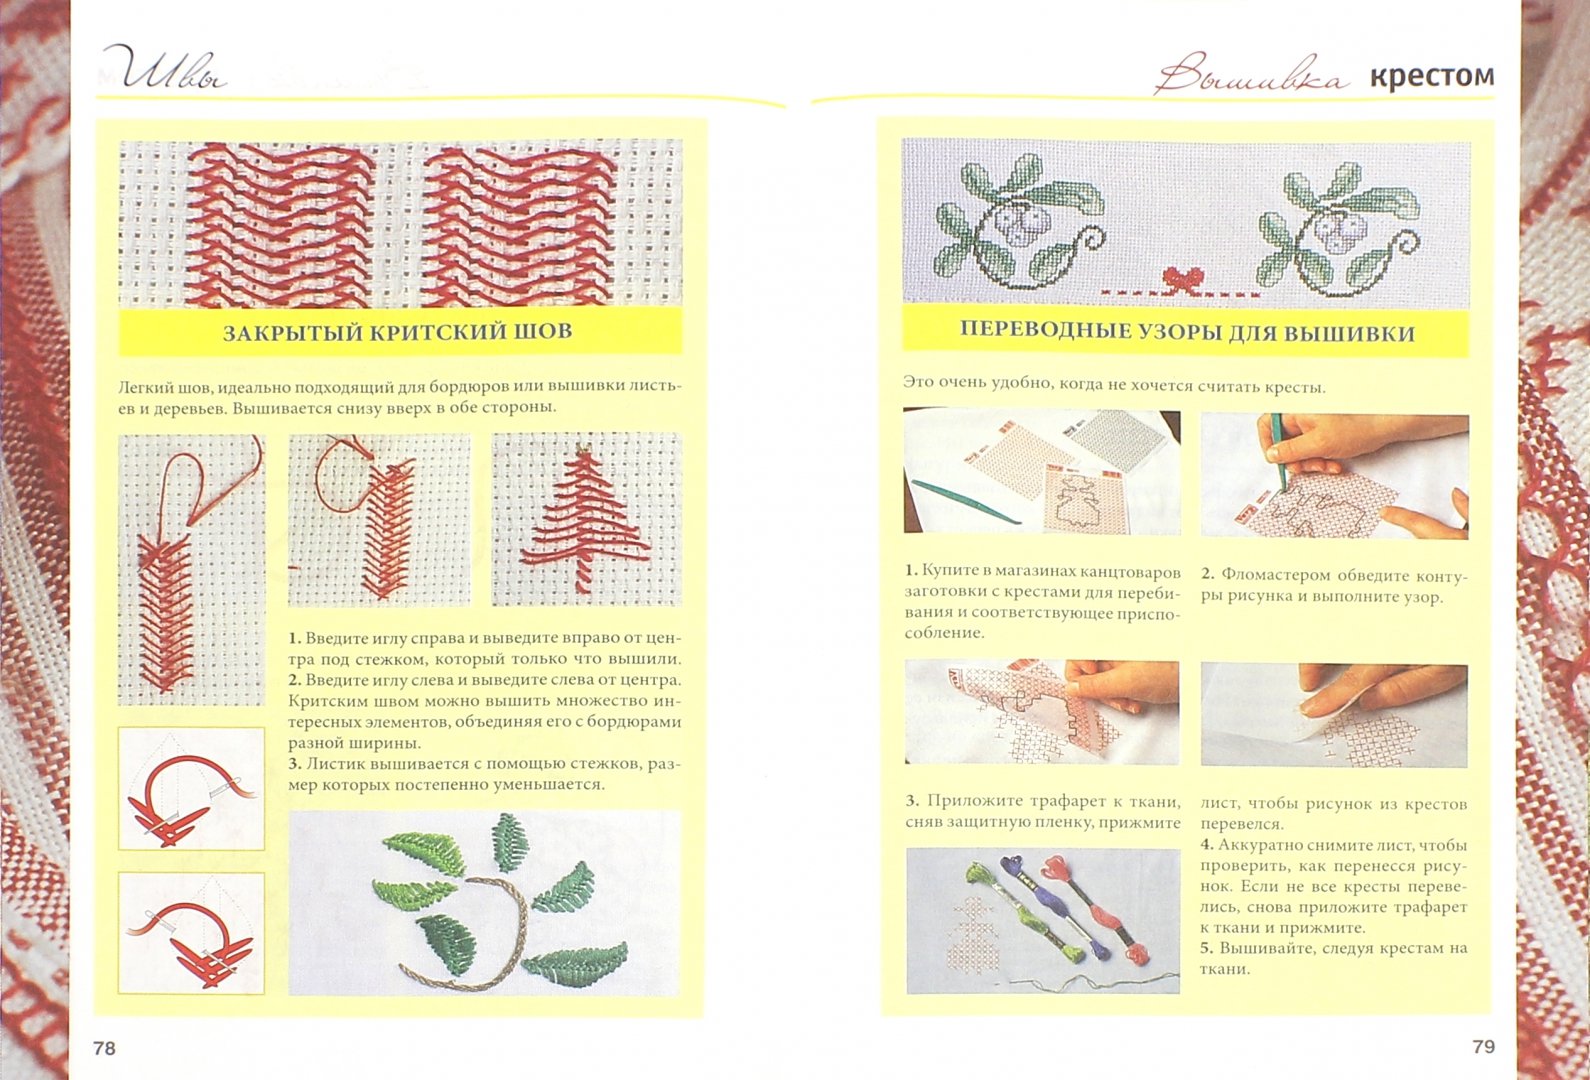 Иллюстрация 1 из 16 для Самый полный самоучитель по вышивке - Кристанини, Страбелло | Лабиринт - книги. Источник: Лабиринт